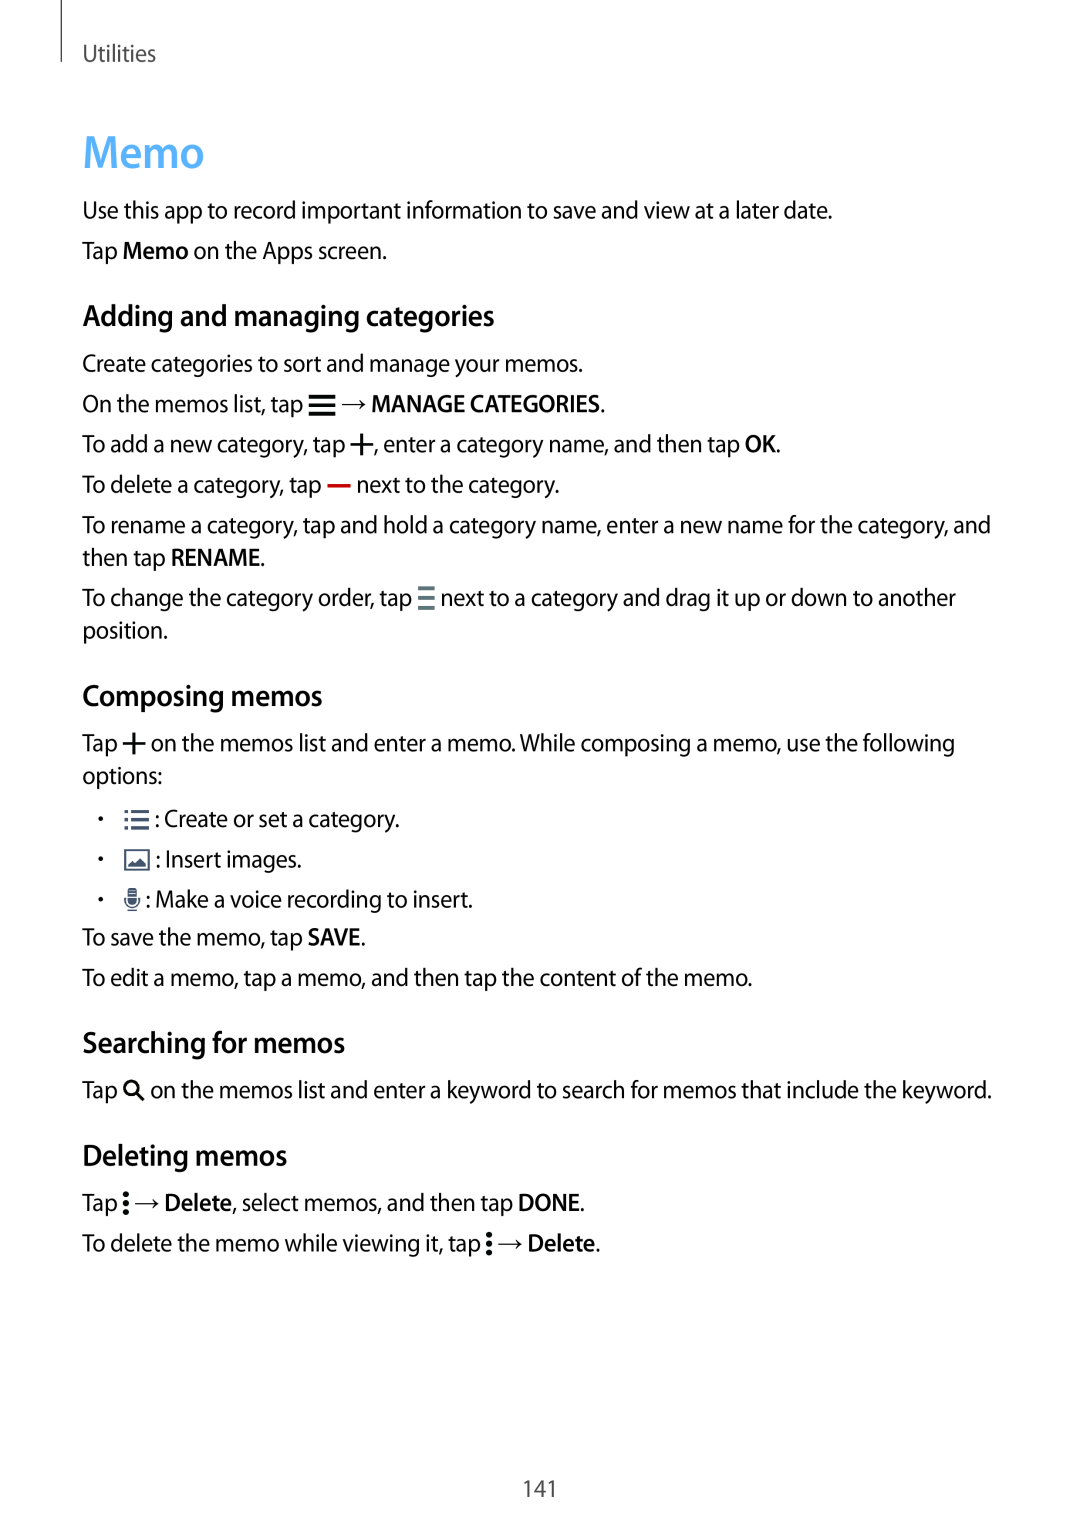 Samsung SM-G901FZDABAL manual Memo, Adding and managing categories, Composing memos, Searching for memos, Deleting memos 